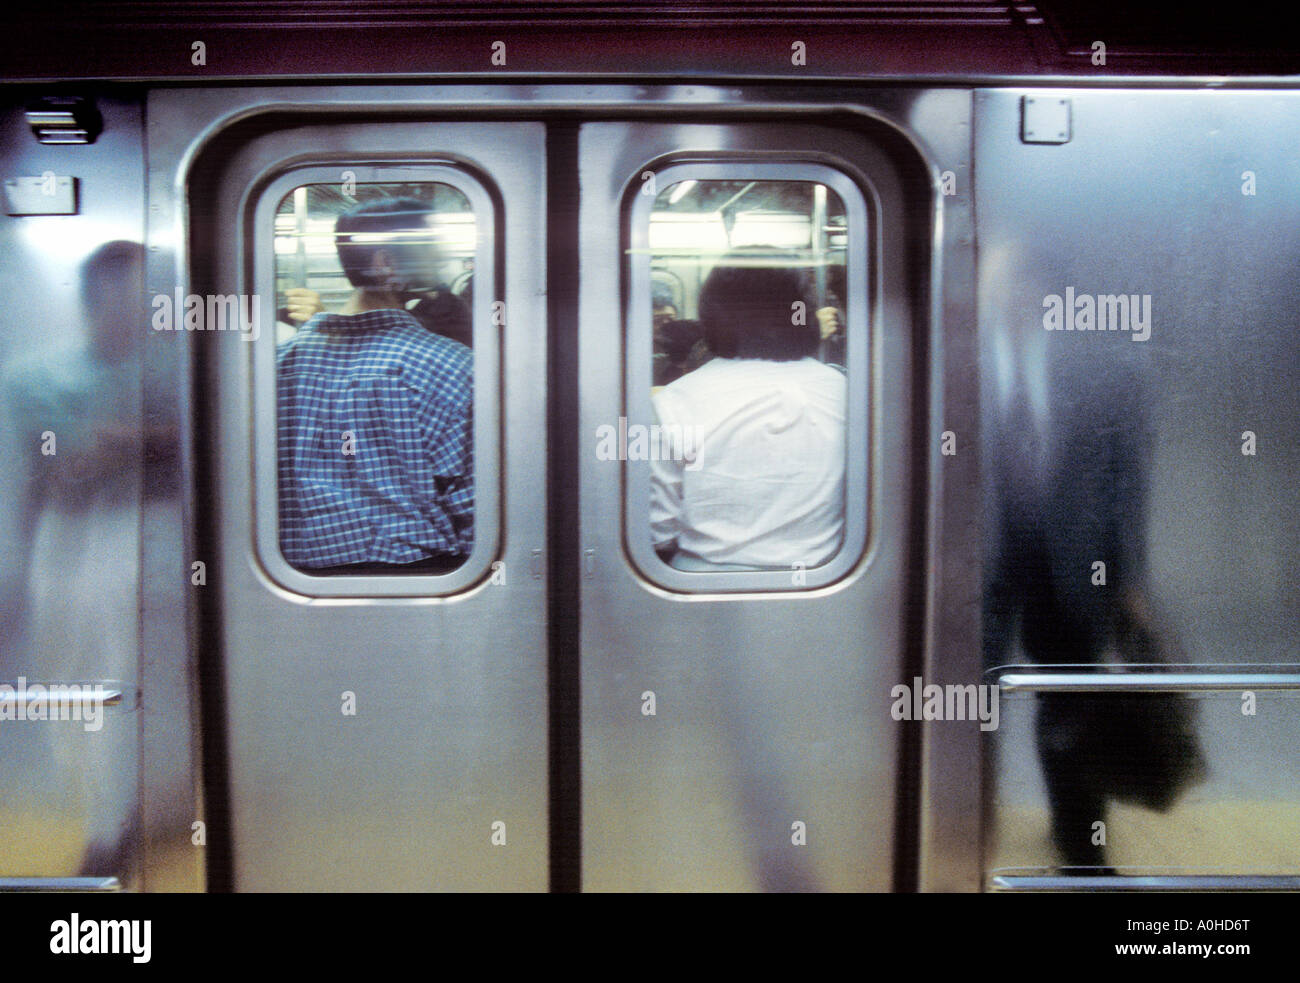 Transports en commun New York City Subway train surpeuplement. Les passagers appuient contre les portes fermées. Métro bondé. Plate-forme de la station. Banque D'Images